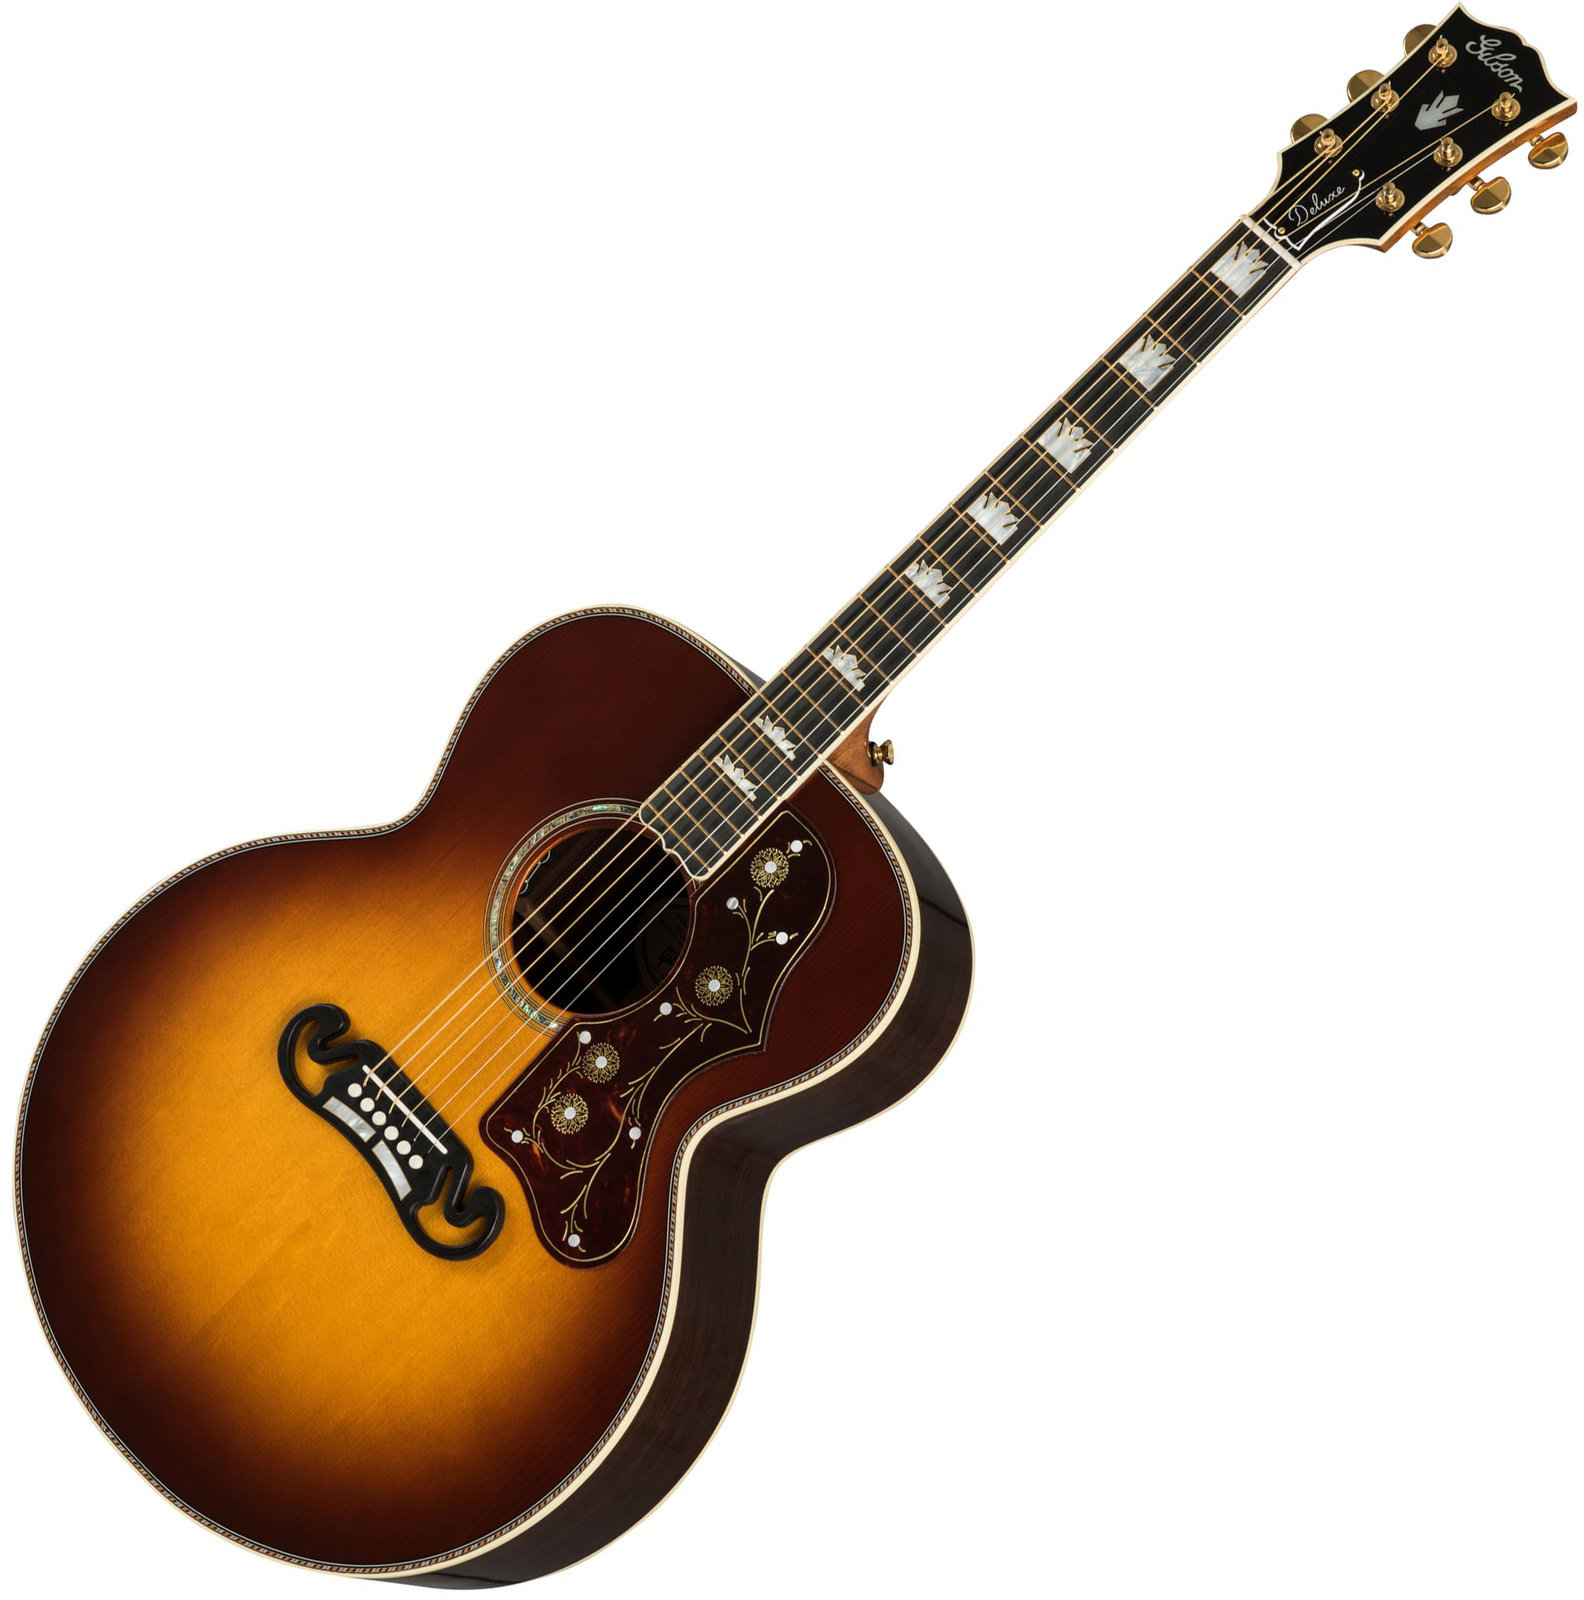 Ηλεκτροακουστική Κιθάρα Jumbo Gibson J-200 Deluxe 2019 RW Rosewood Burst